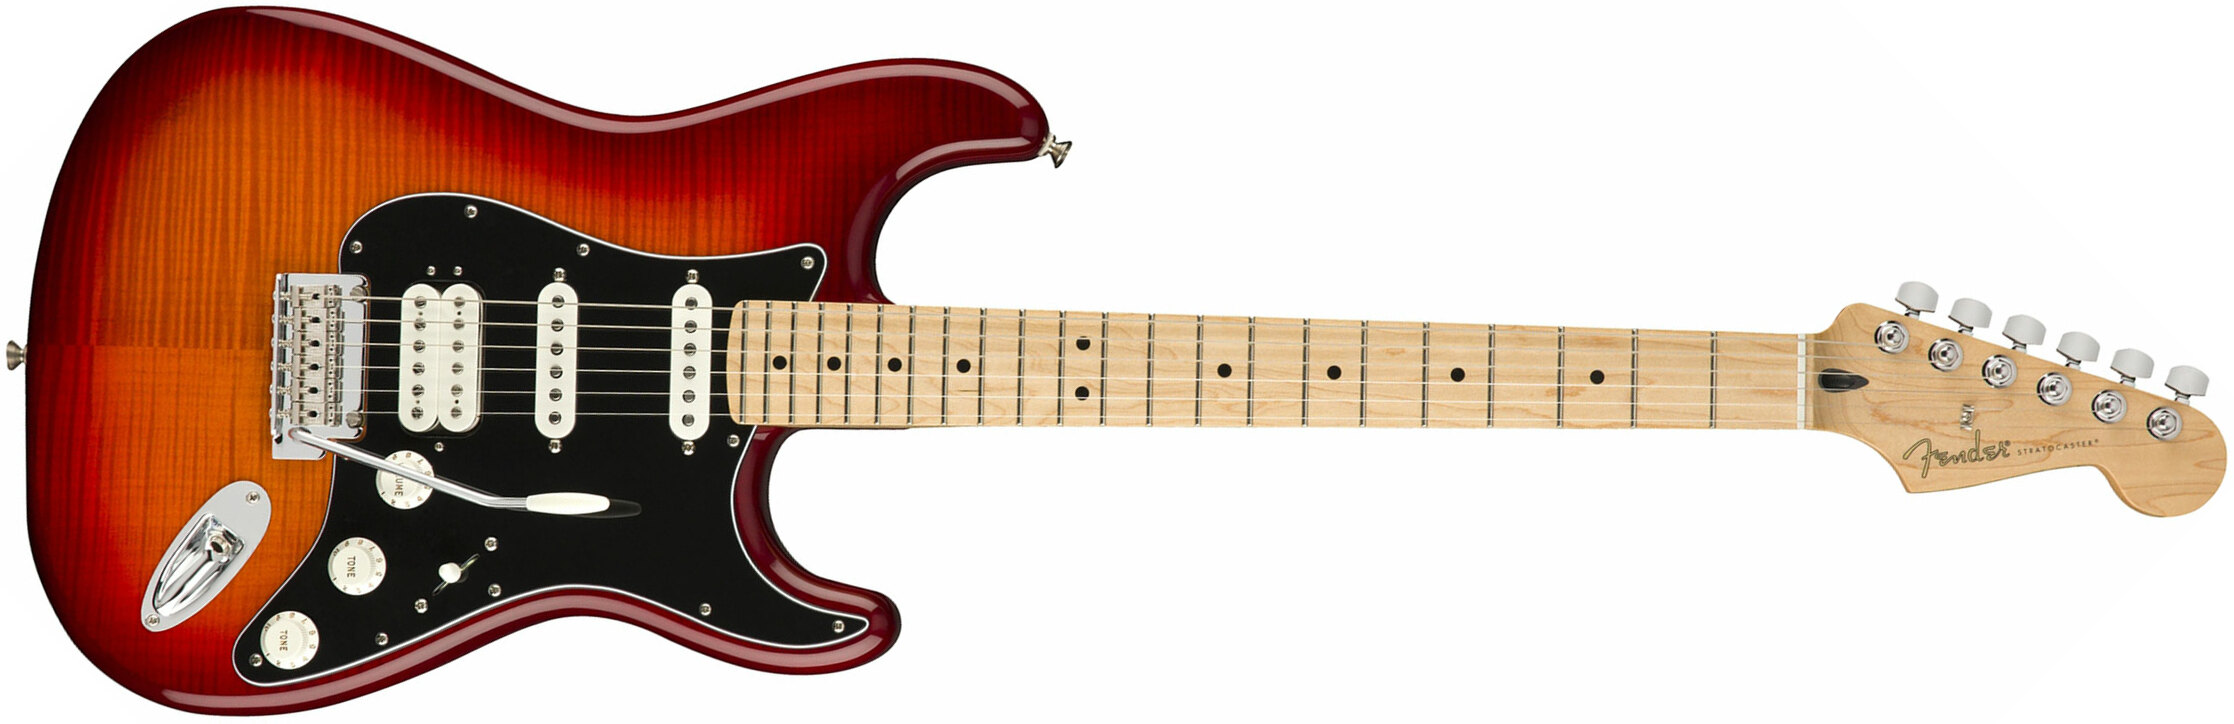 Fender Strat Player Plus Top Mex Hss Mn - Aged Cherry Burst - Guitare Électrique Forme Str - Main picture